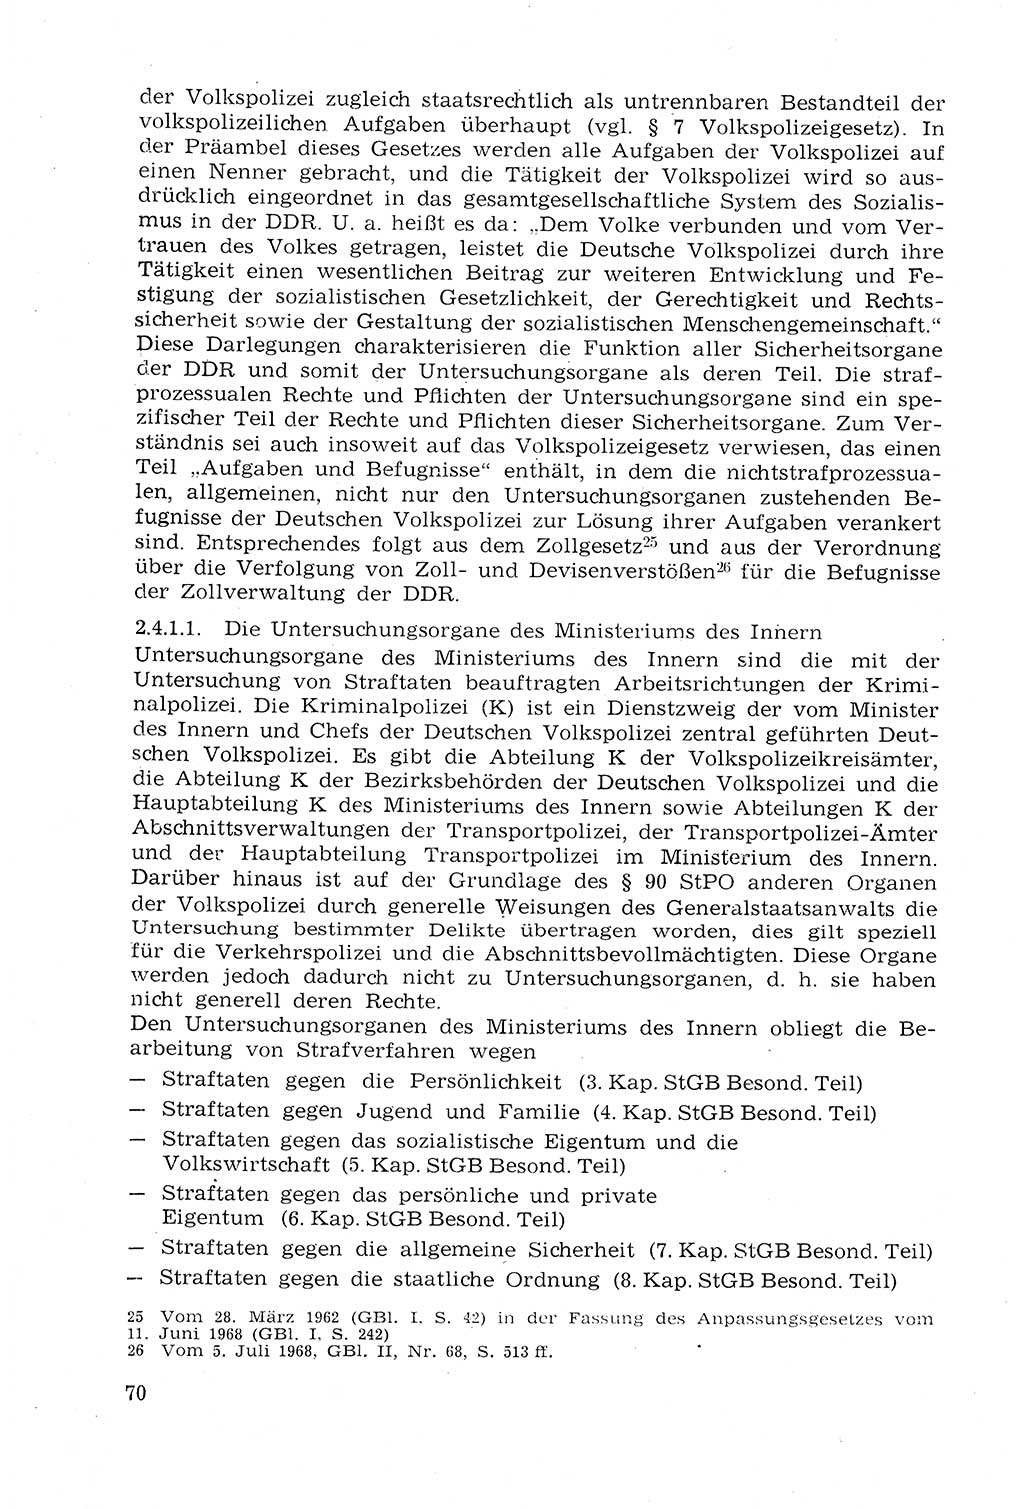 Strafprozeßrecht der DDR (Deutsche Demokratische Republik), Lehrmaterial 1969, Seite 70 (Strafprozeßr. DDR Lehrmat. 1969, S. 70)